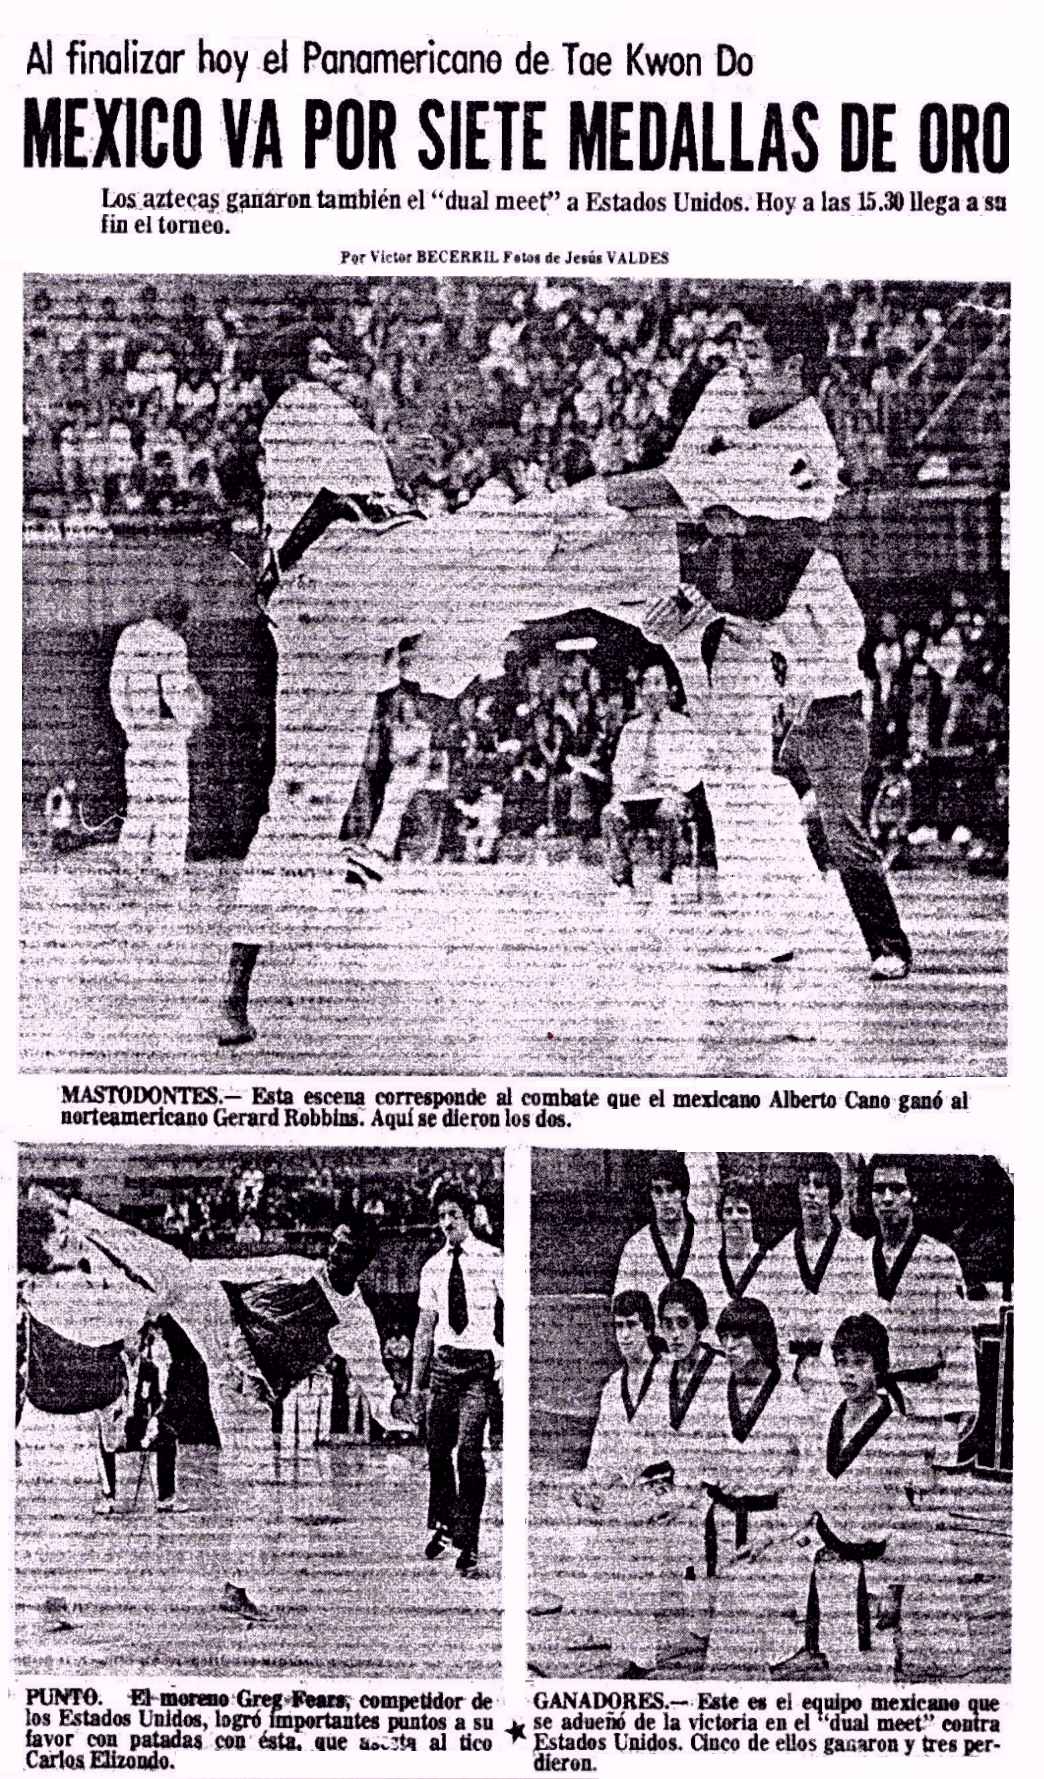 1ST PAN AM TAEKWONDO CHAMPIONSHIPS 1978 MEXICO - NEWSPAPER ARTICLE - ABRE  HOY EL PREMER CAMPEONATO PANAMERICANO DE TAEKWON DO - TAEKWONDO HALL OF  FAME - TAEKWONDOHALLOFFAME.COM